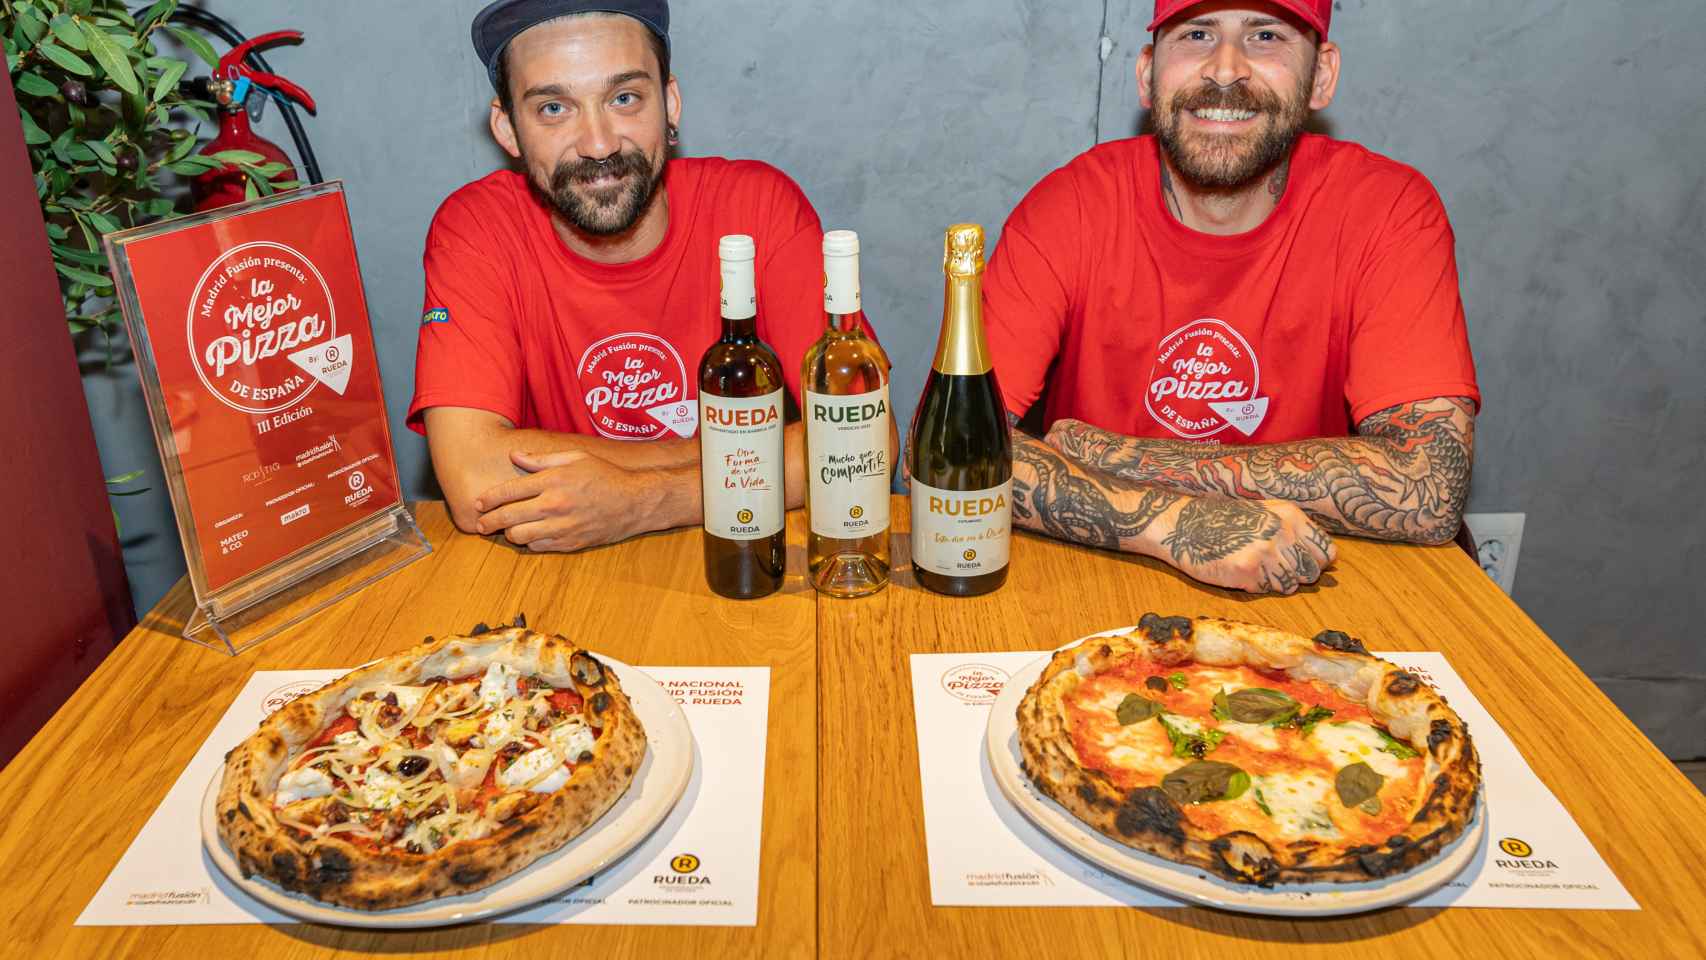 Can Pizza con sus recetas ganadoras del concurso.